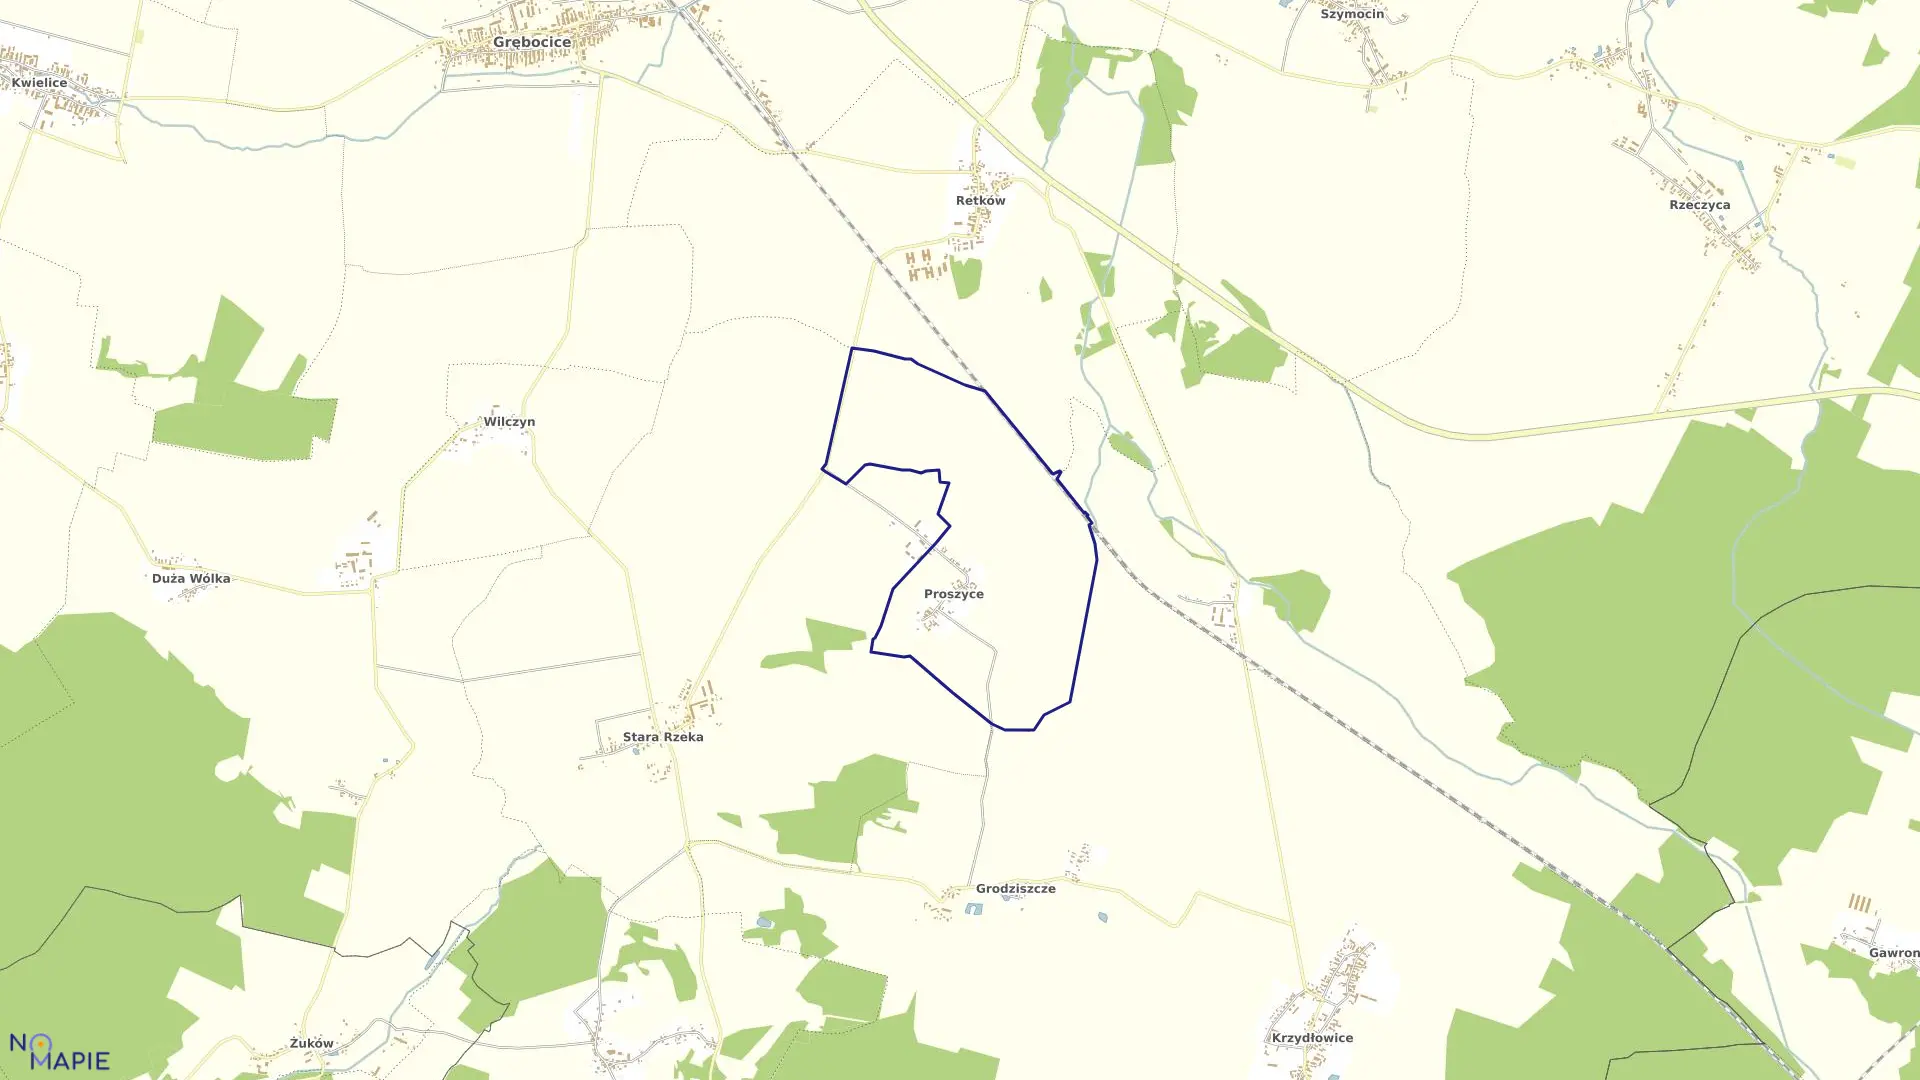 Mapa obrębu Proszyce w gminie Grębocice